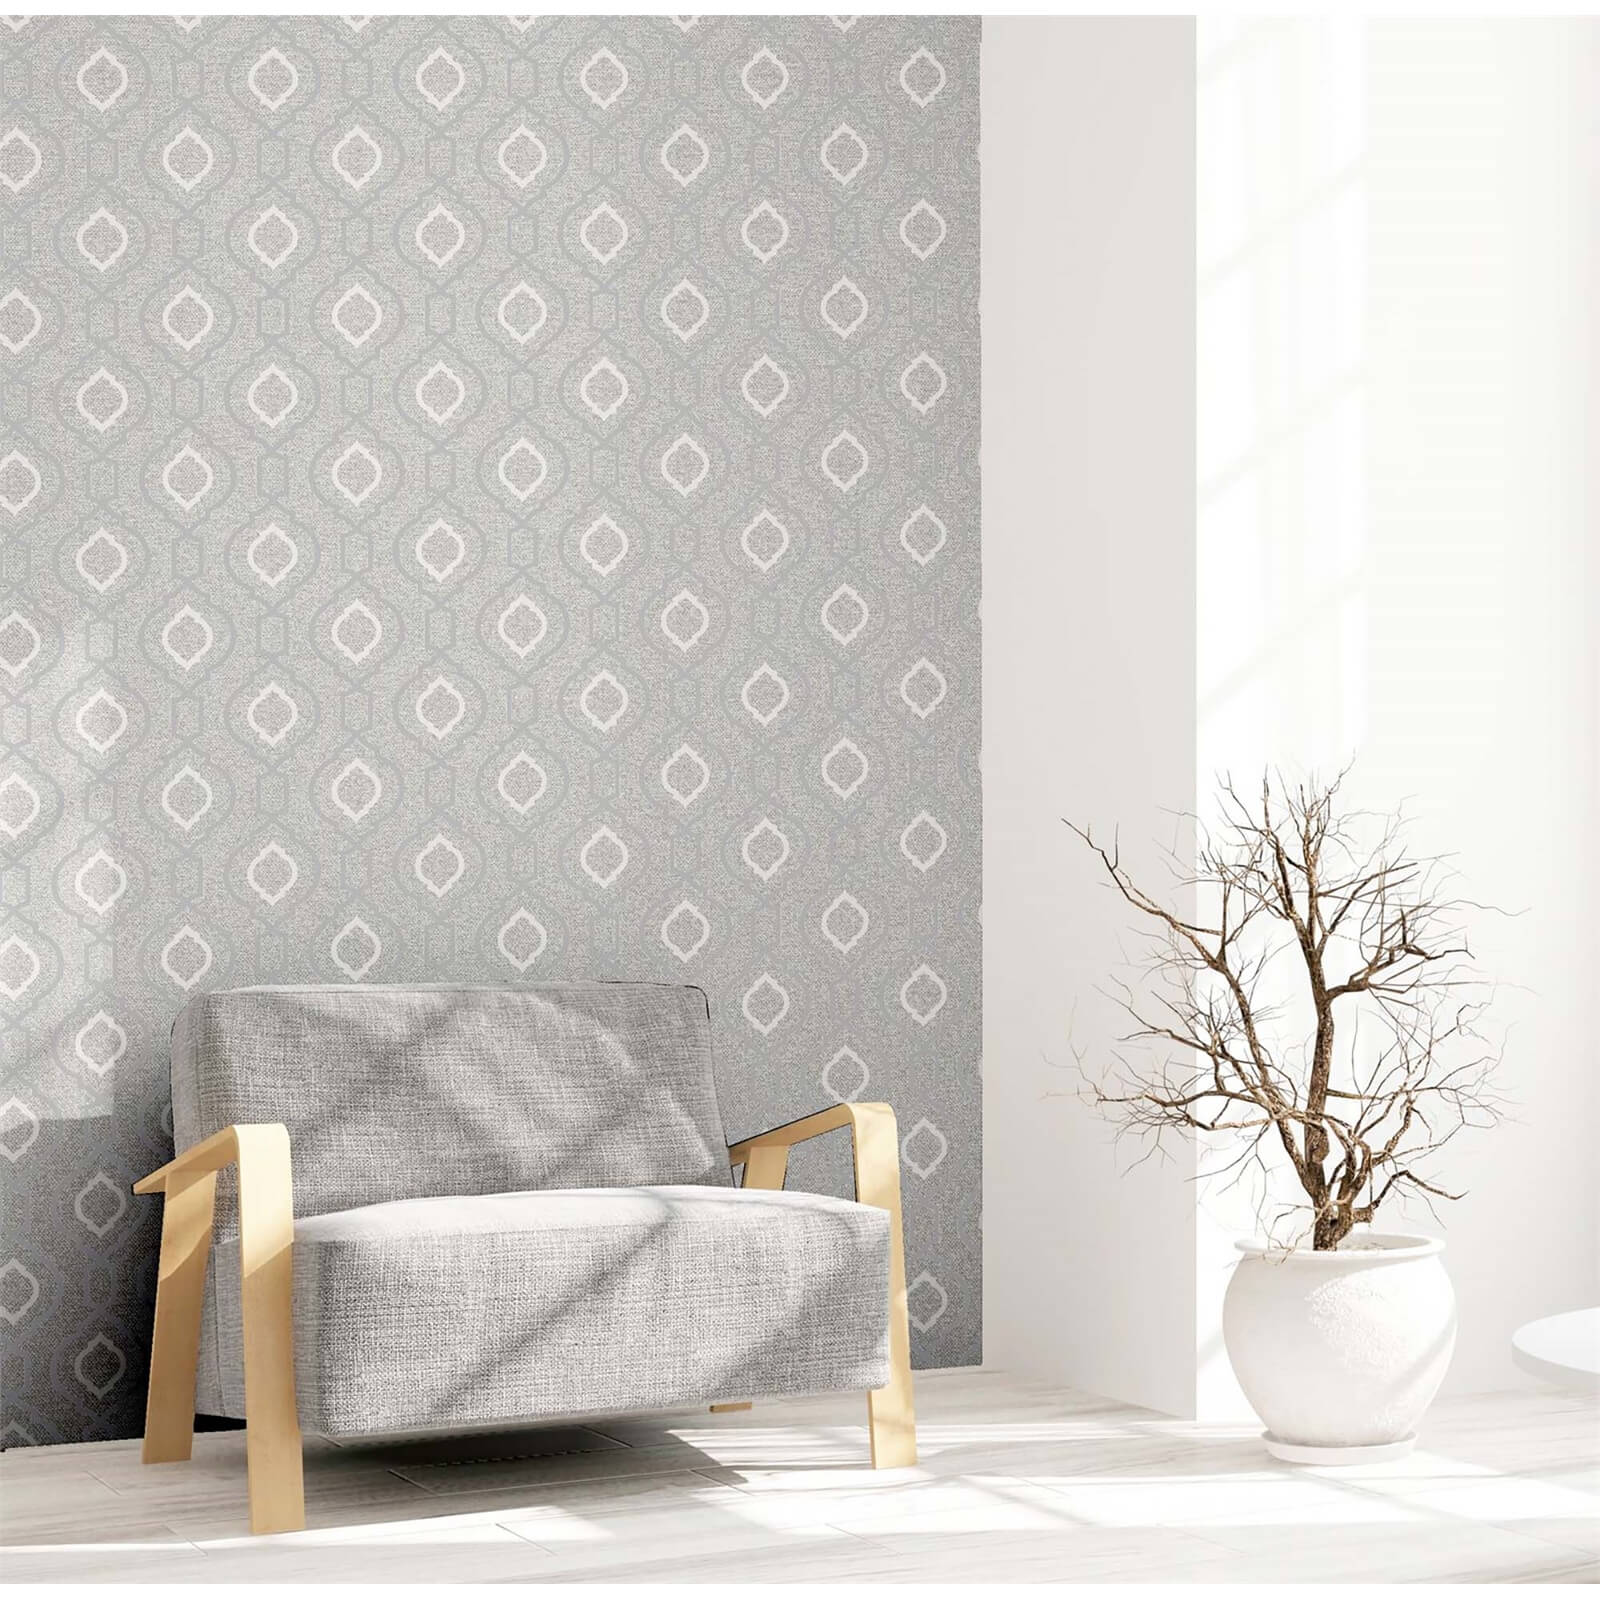 Arthouse Calico Trellis Grey Wallpaper